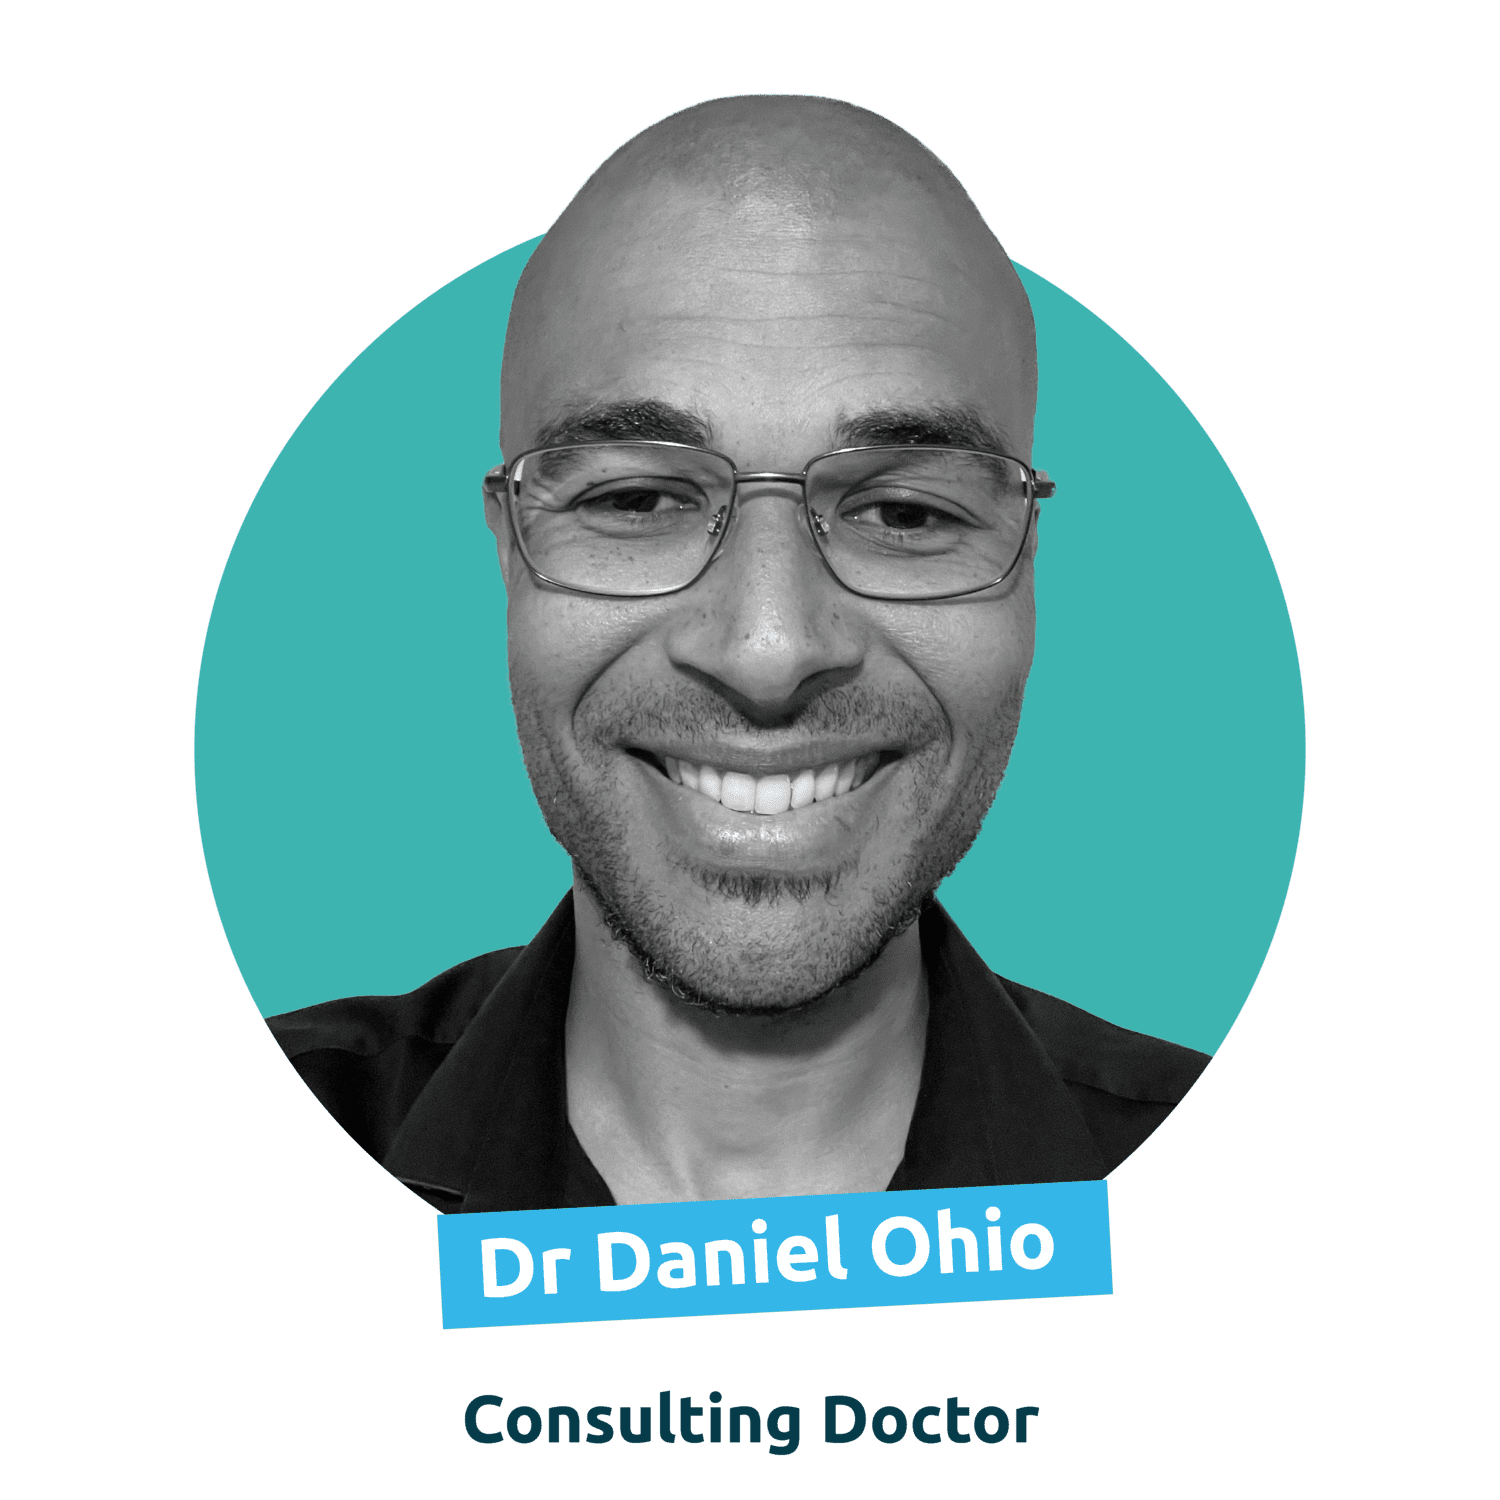 Dr Daniel Ohio